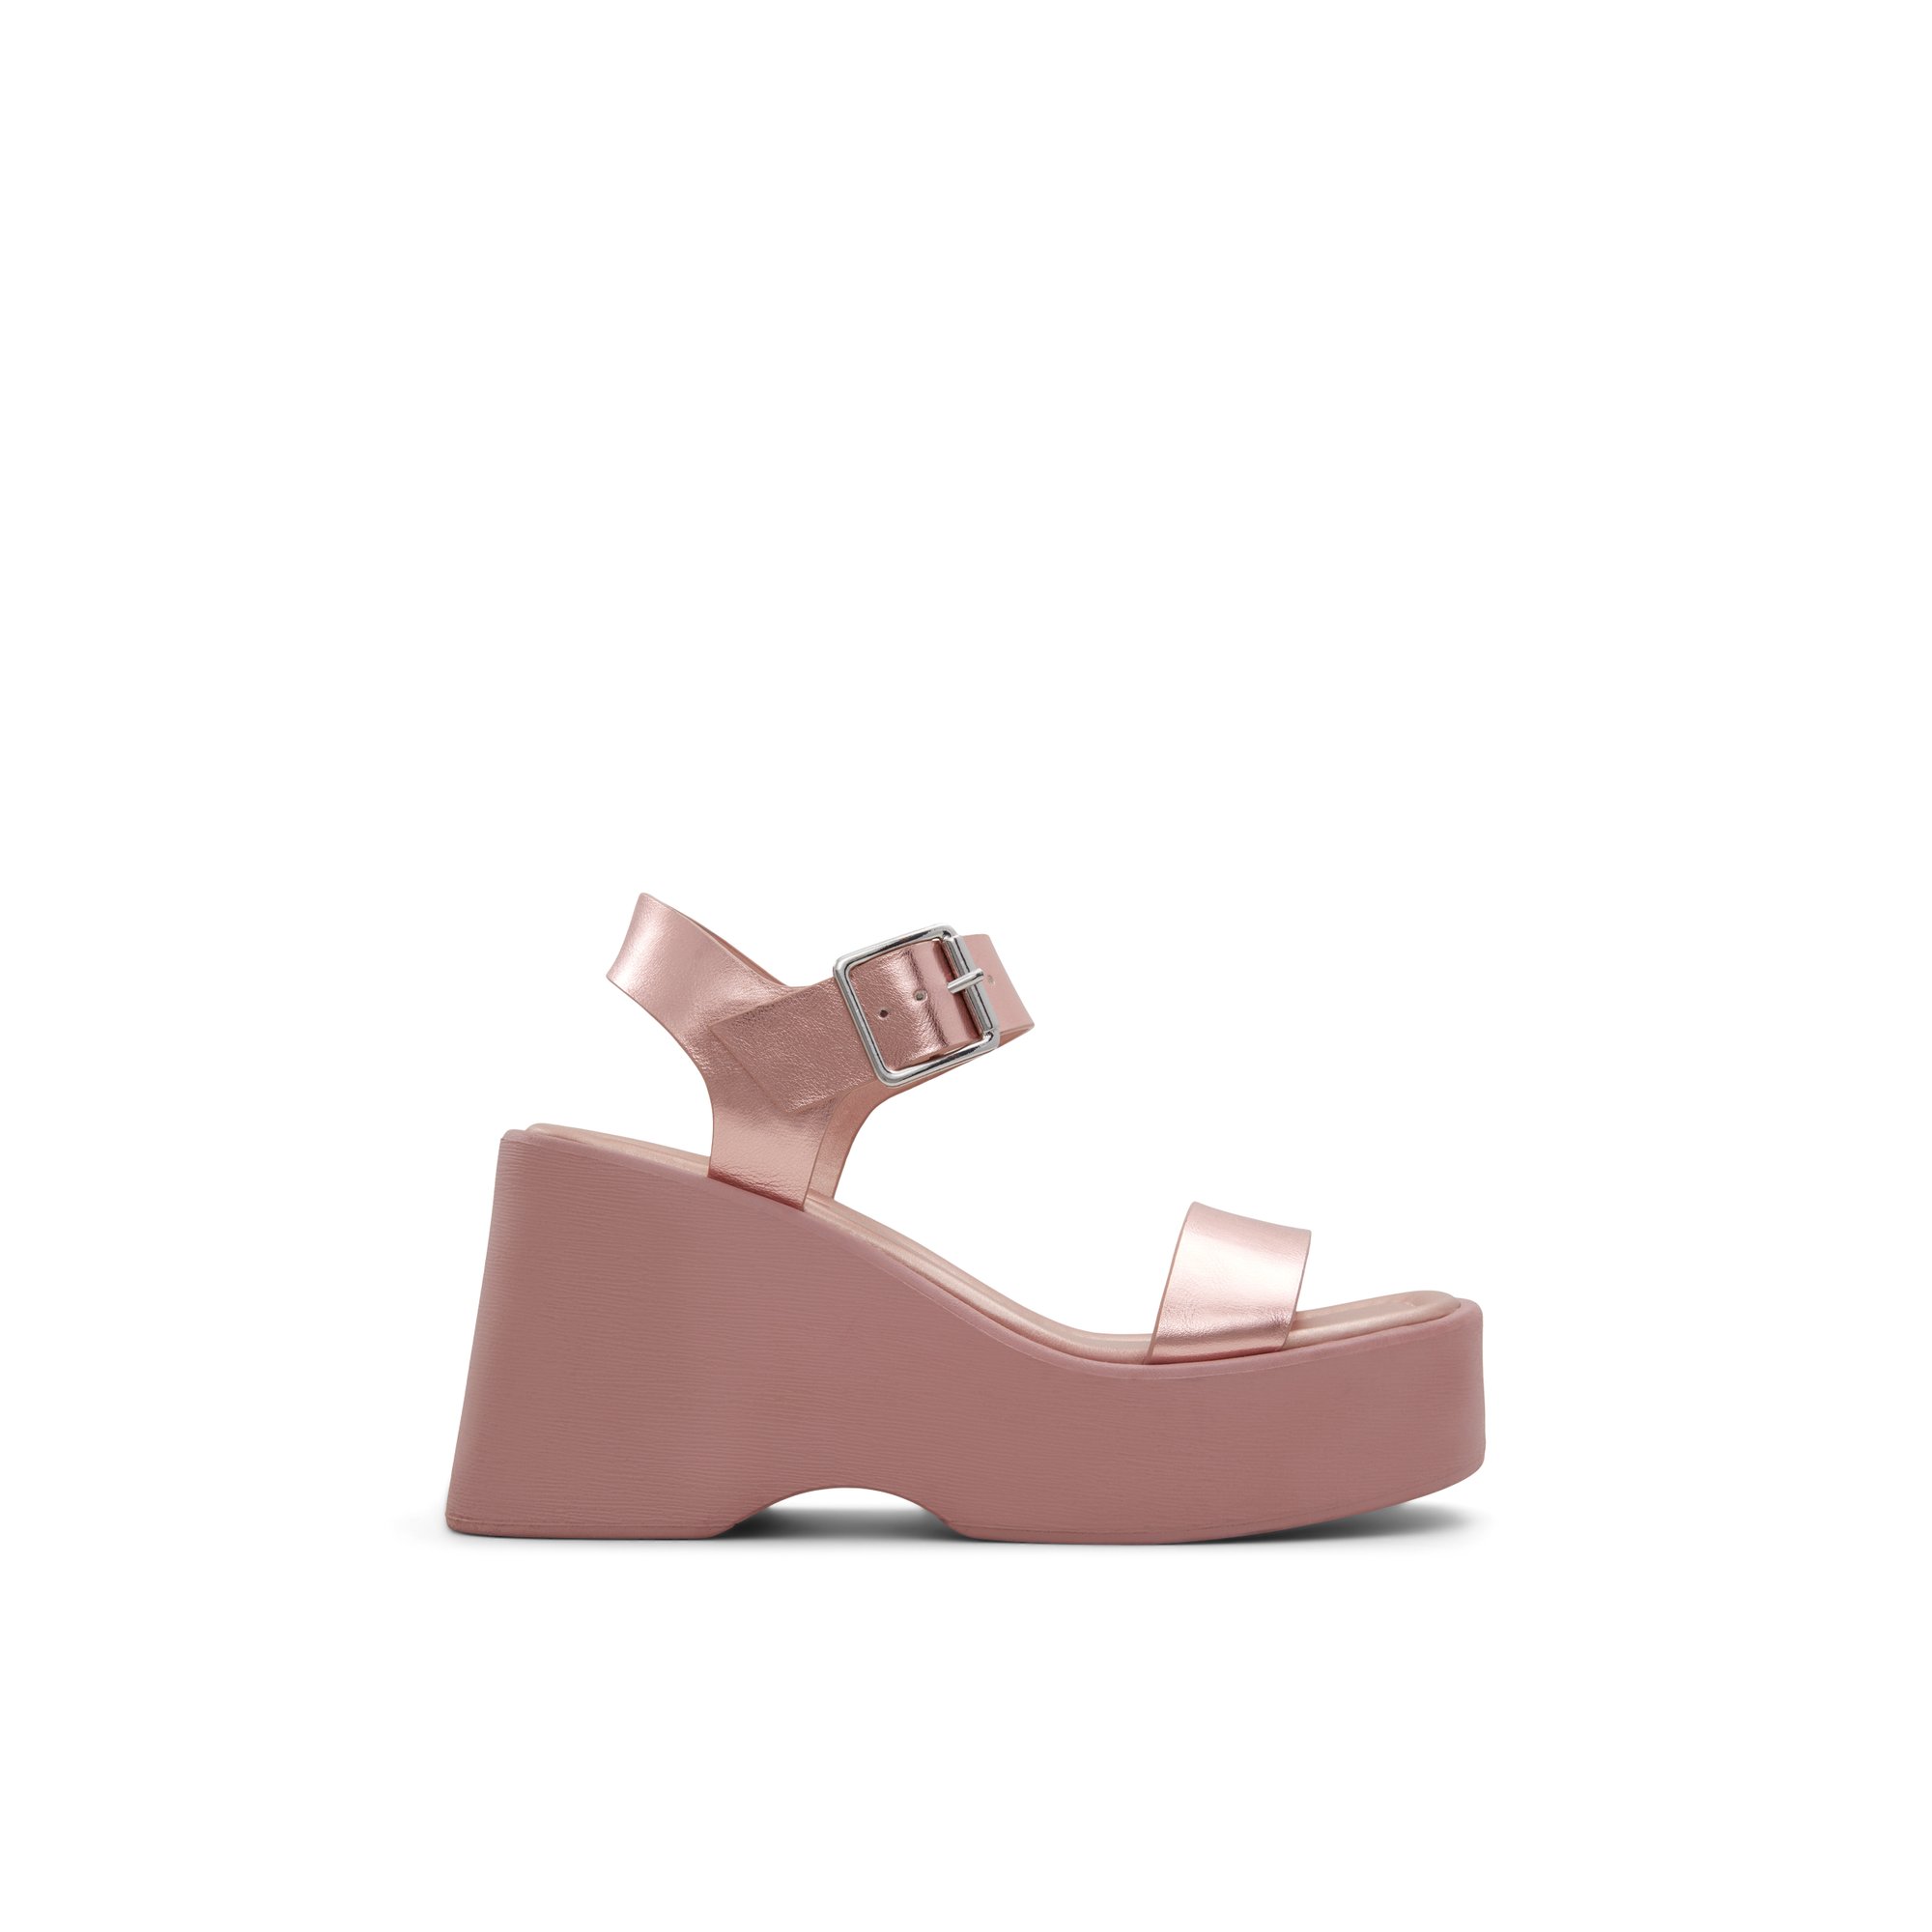 ALDO Pauline - Women's Wedge Sandals - Pink